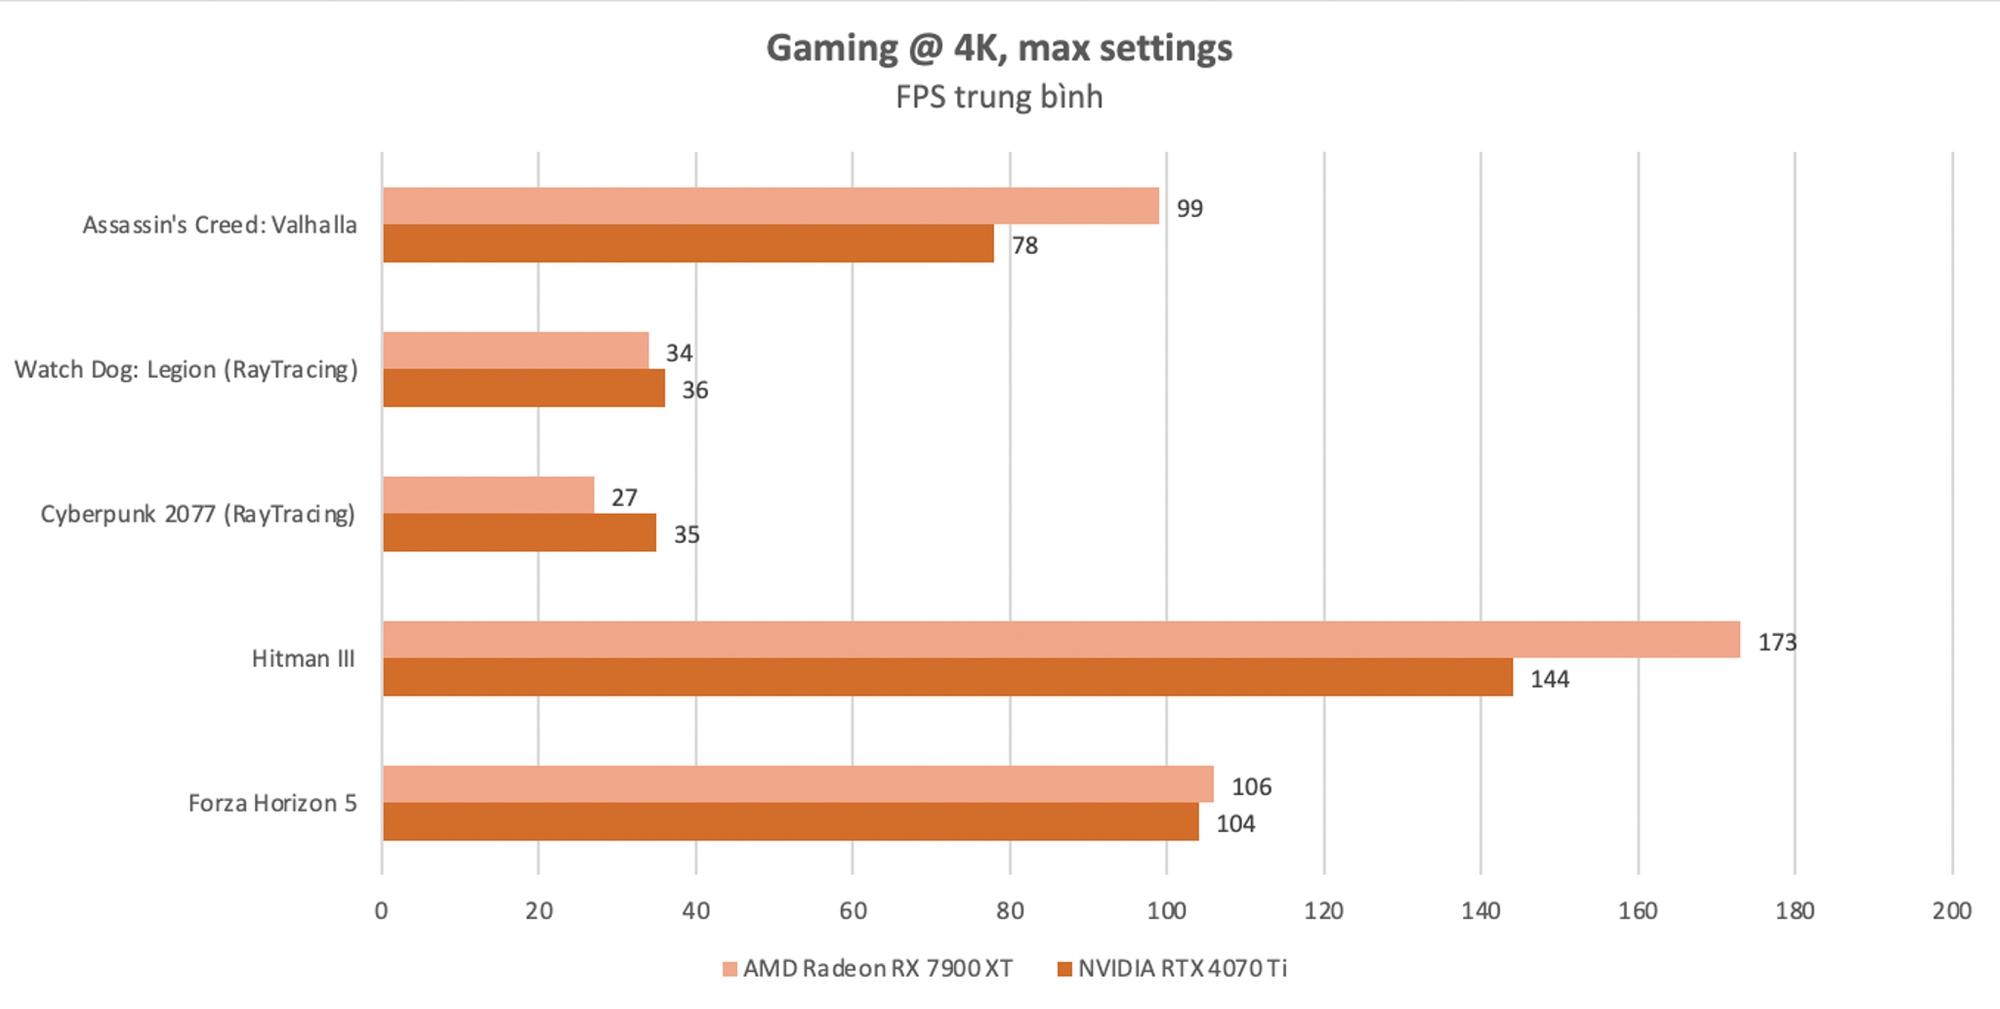 ‏Đánh giá AMD Radeon RX 7900 XT: Lựa chọn cho cấu hình chơi game 4K với mức giá hợp lý‏ - Ảnh 7.